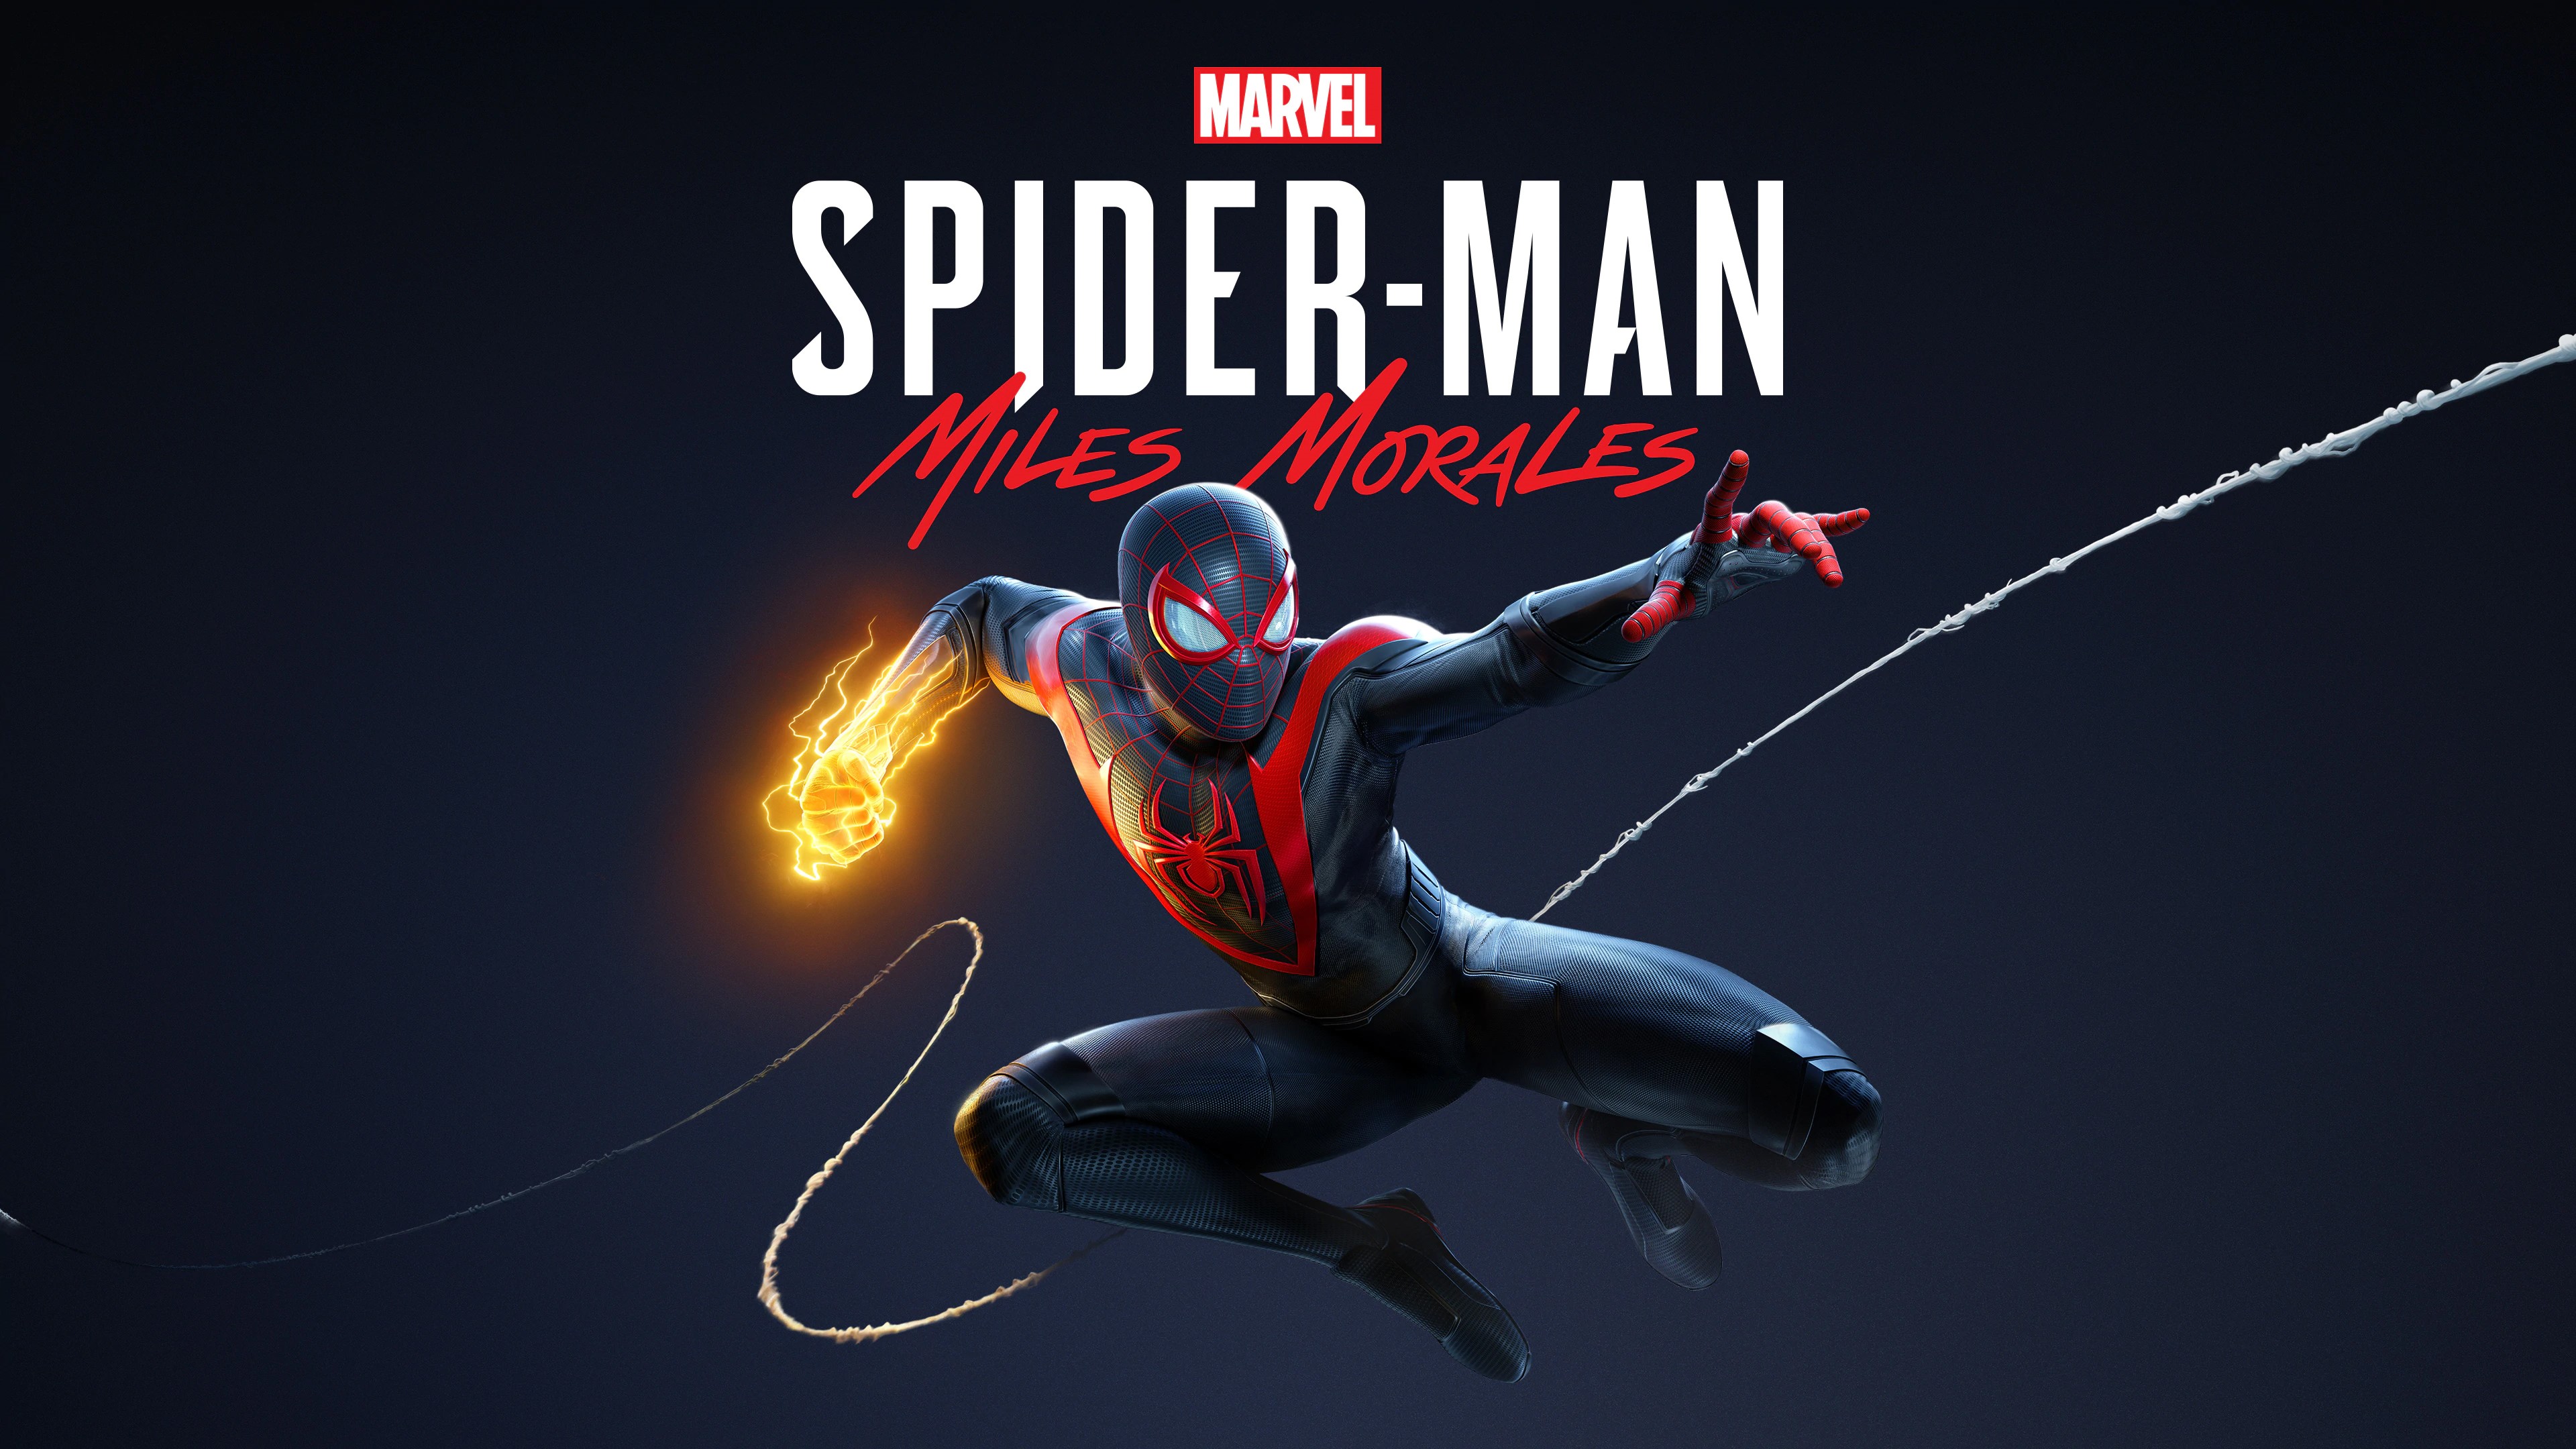 Marvel's Человек-паук /// Spider-Man: Miles Morales ( прохождение 7 )